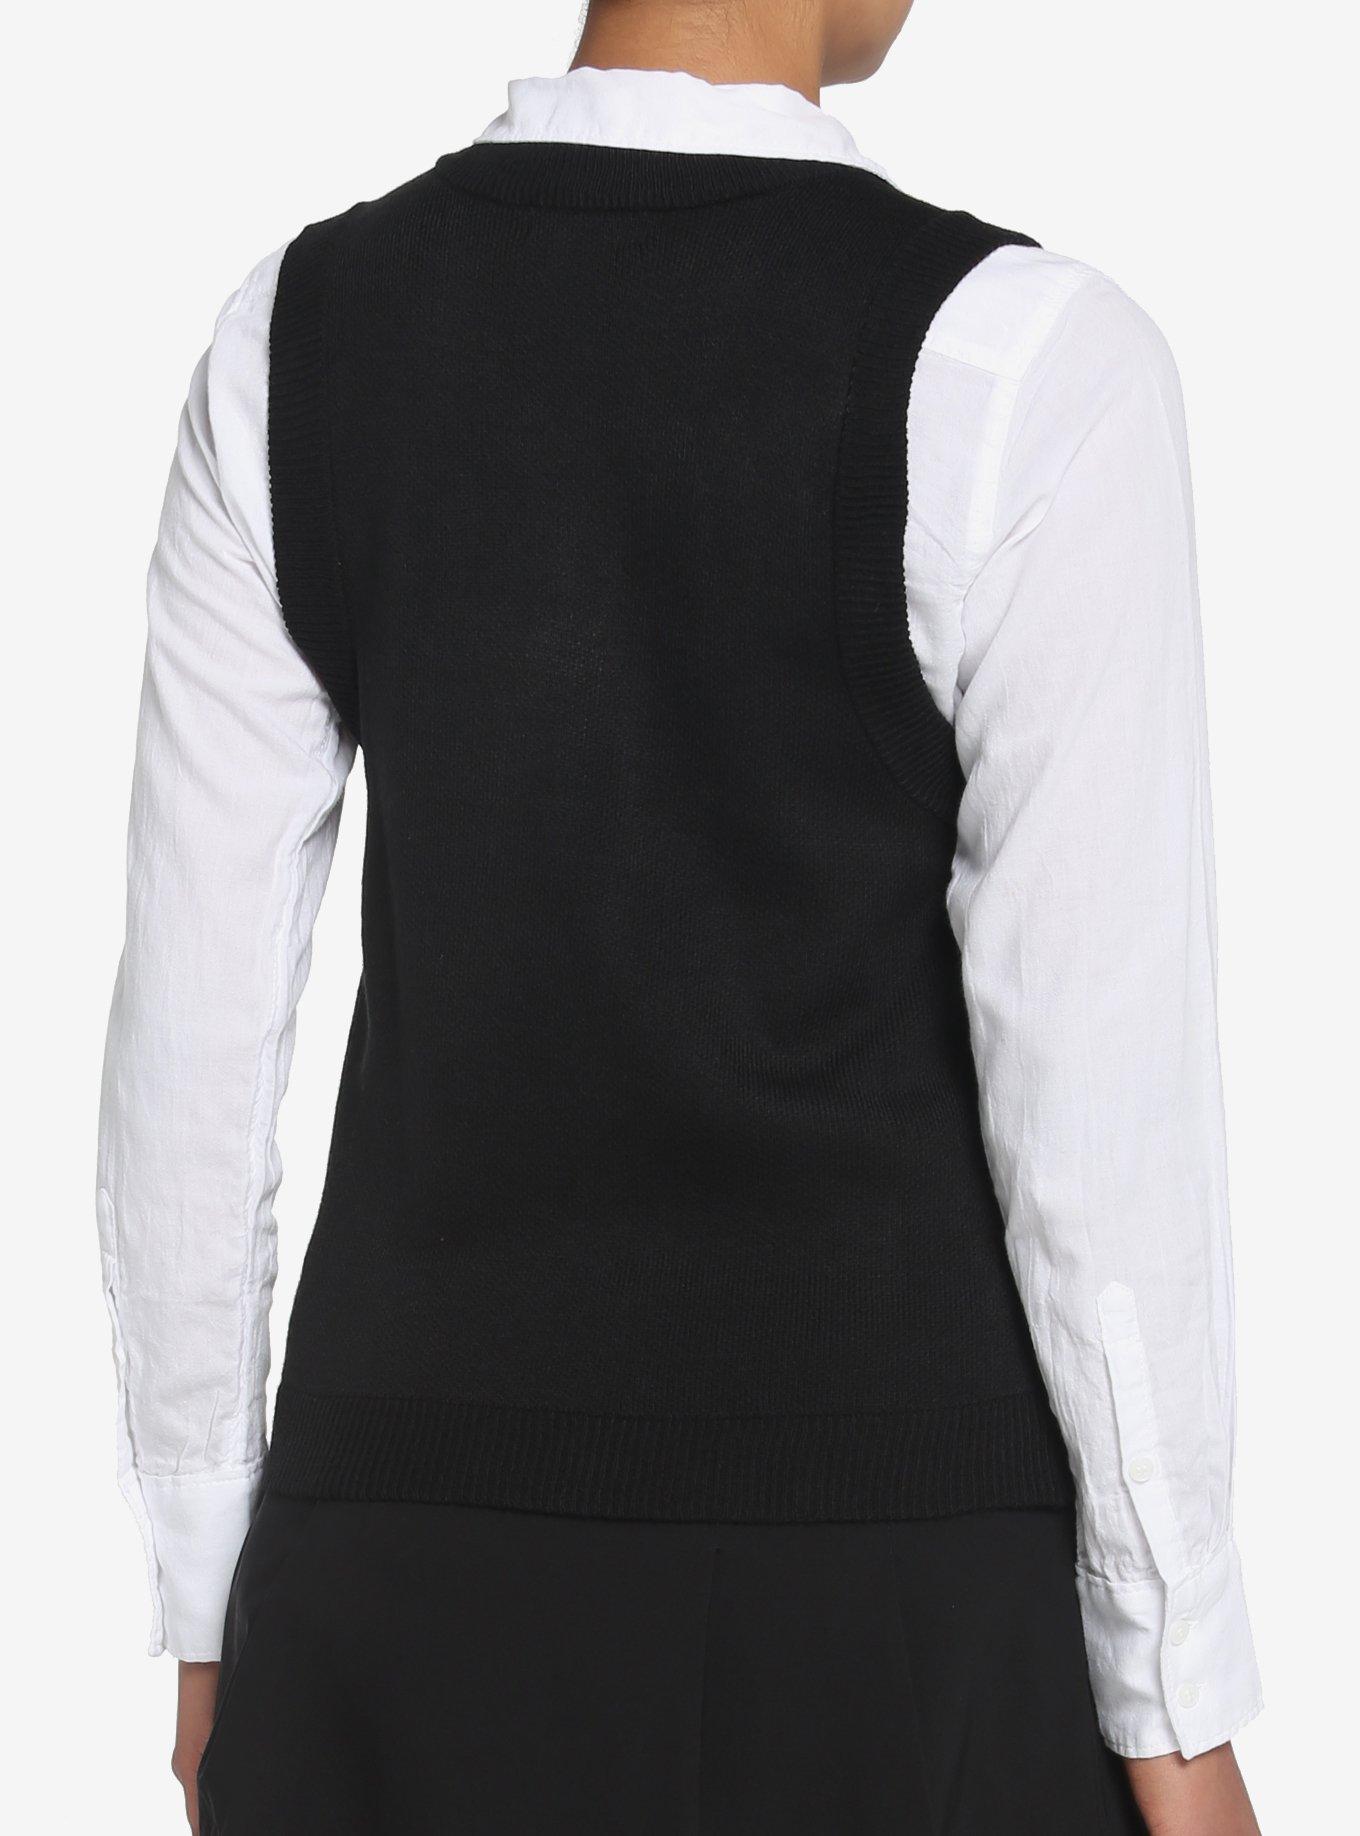 Black Skull Argyle Girls Sweater Vest, BLACK, alternate